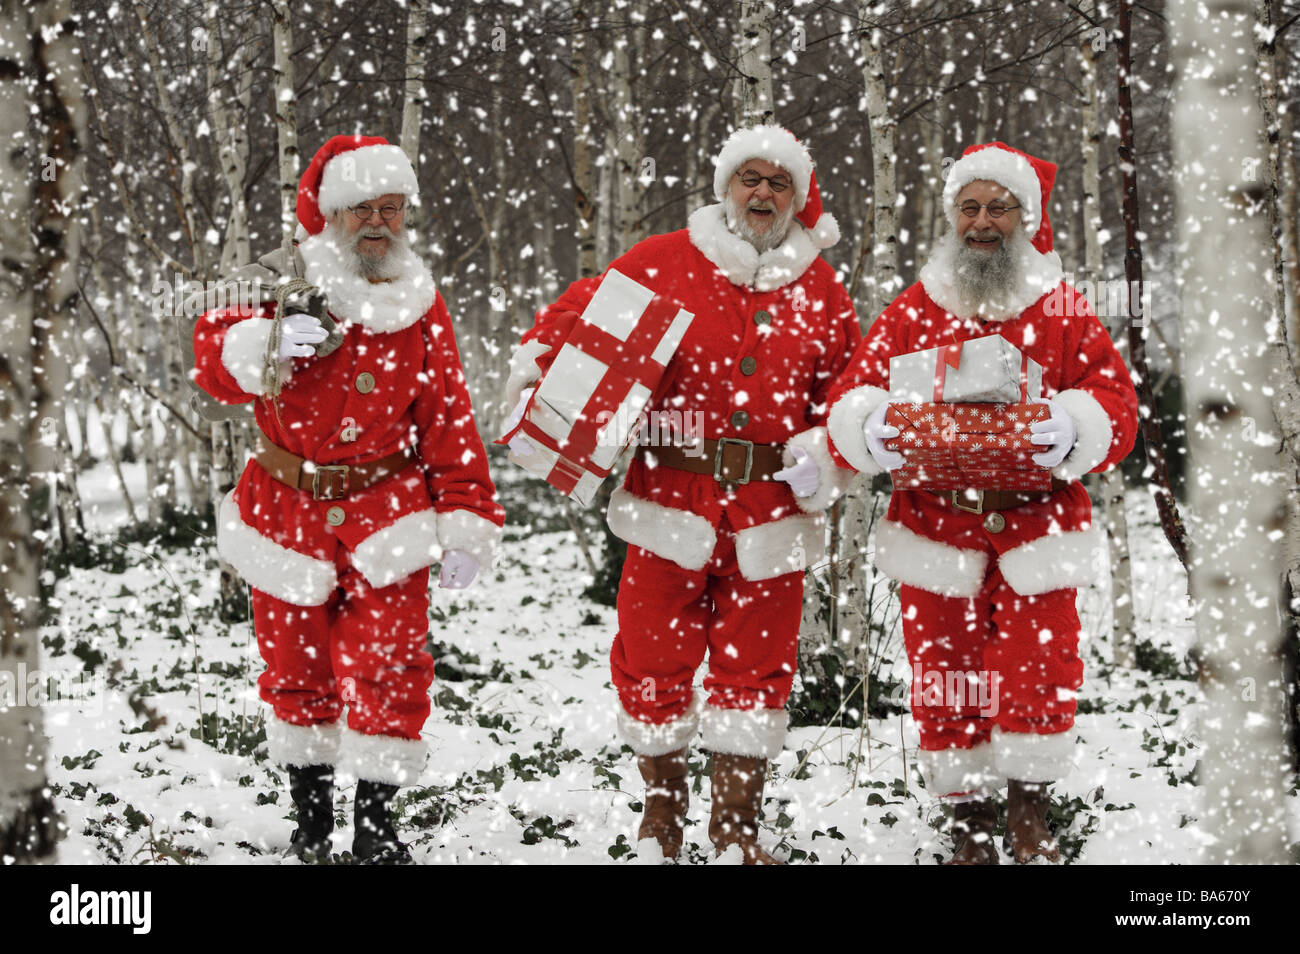 Menschen tragen Wald Schneegestöber Weihnachtsmann Geschenke Weihnachten Männer, die drei Gläser Bärte Weihnachtsgeschenke liefert Outfits zu verschleiern Stockfoto